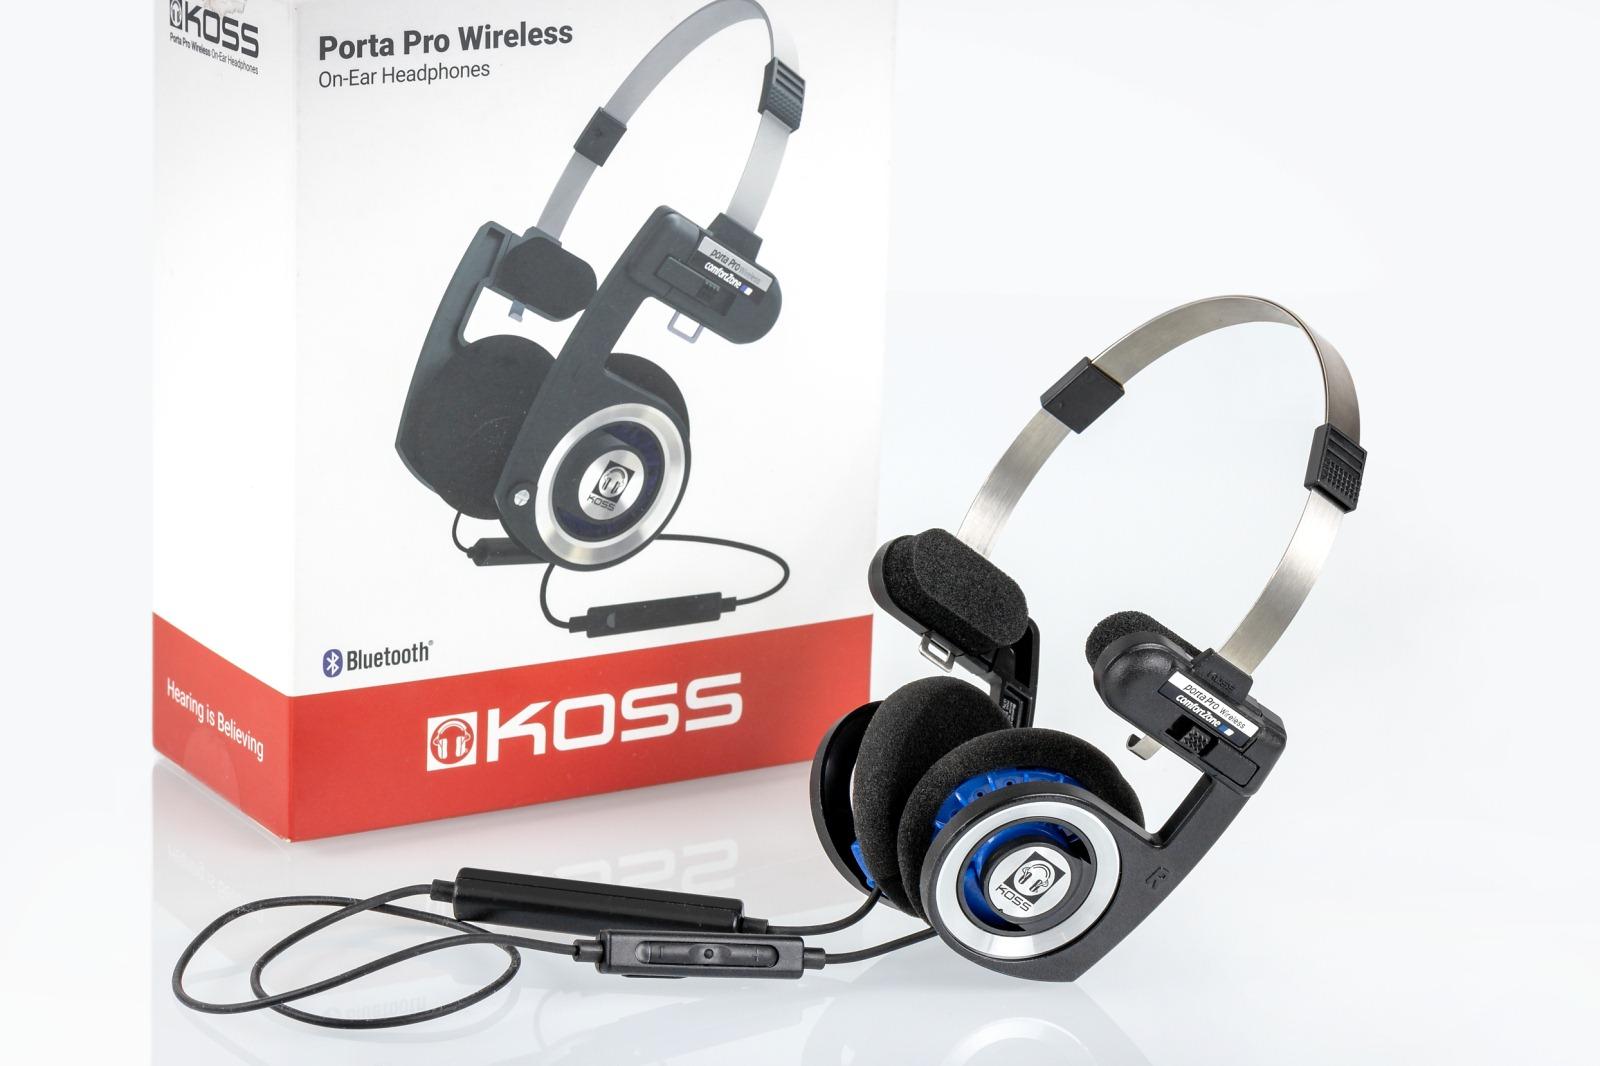 Koss Porta Pro Wireless